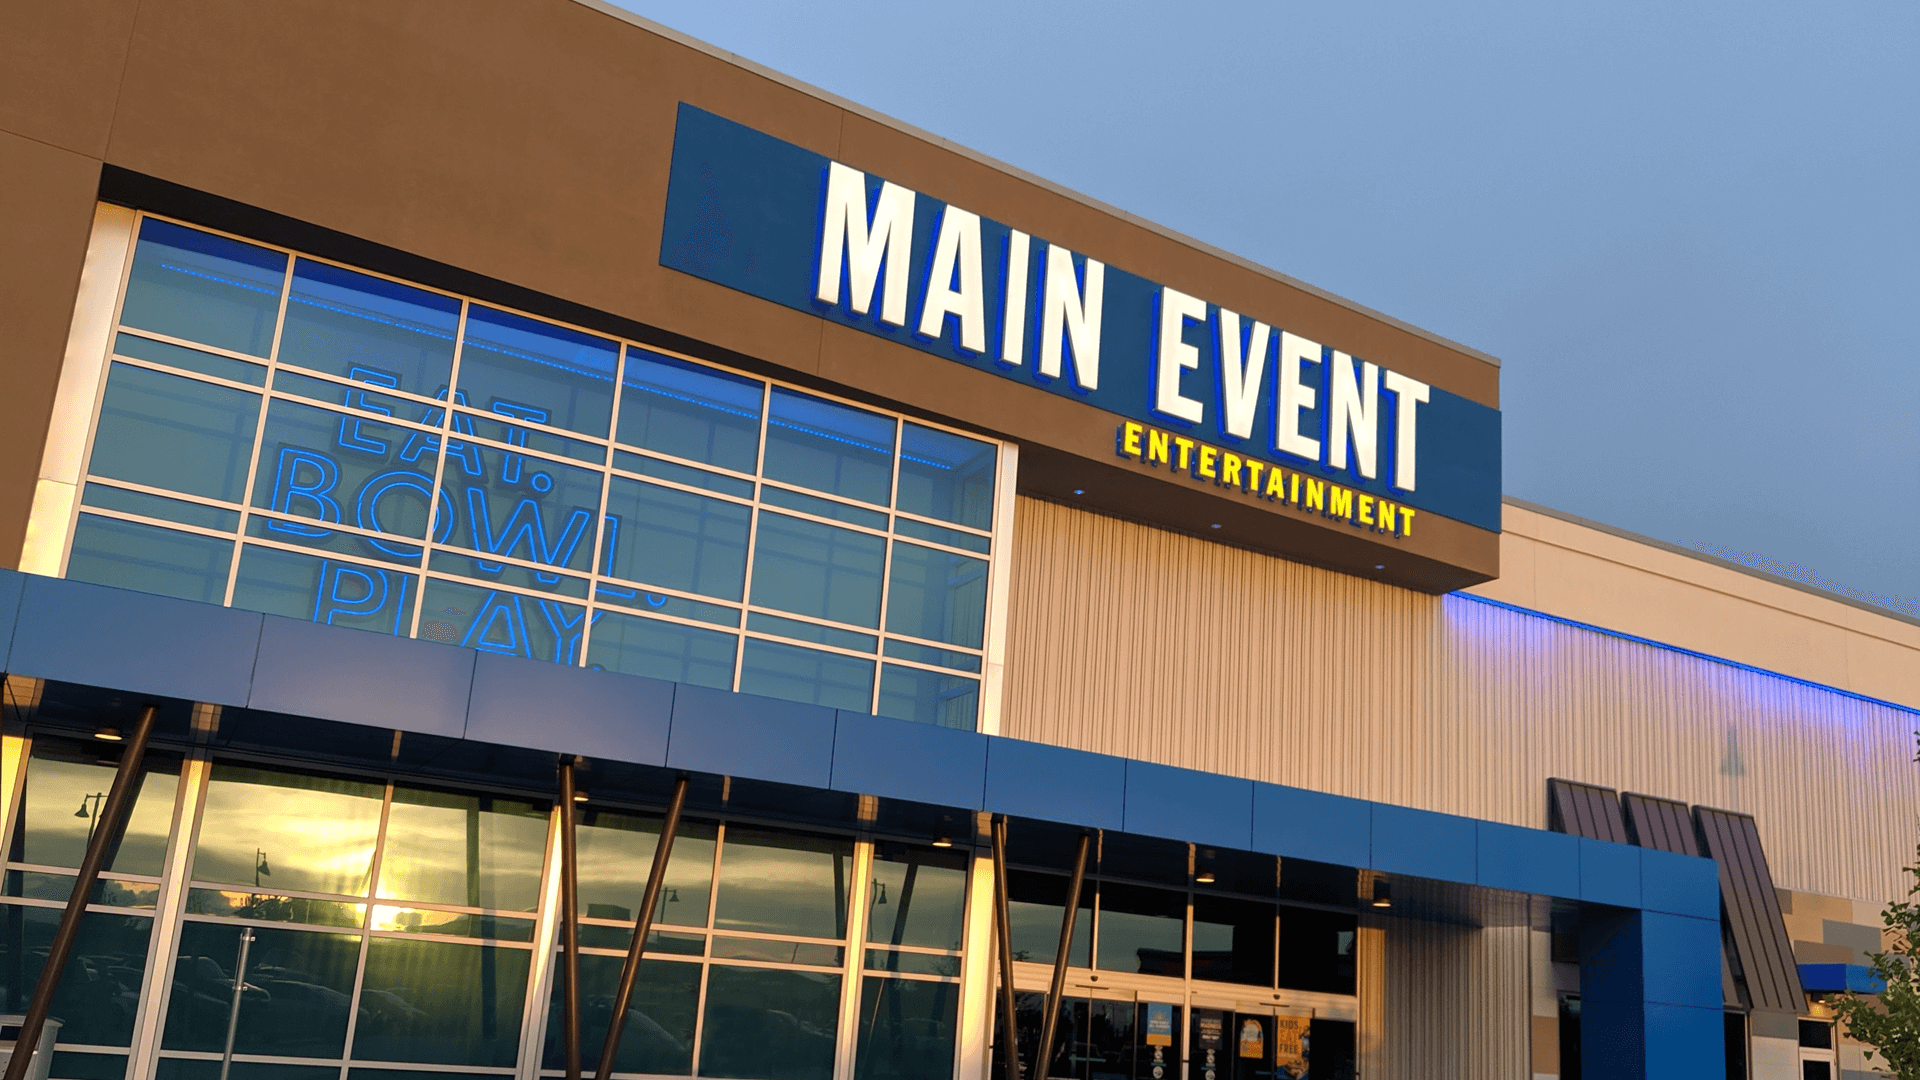 main event entertainment commercial building